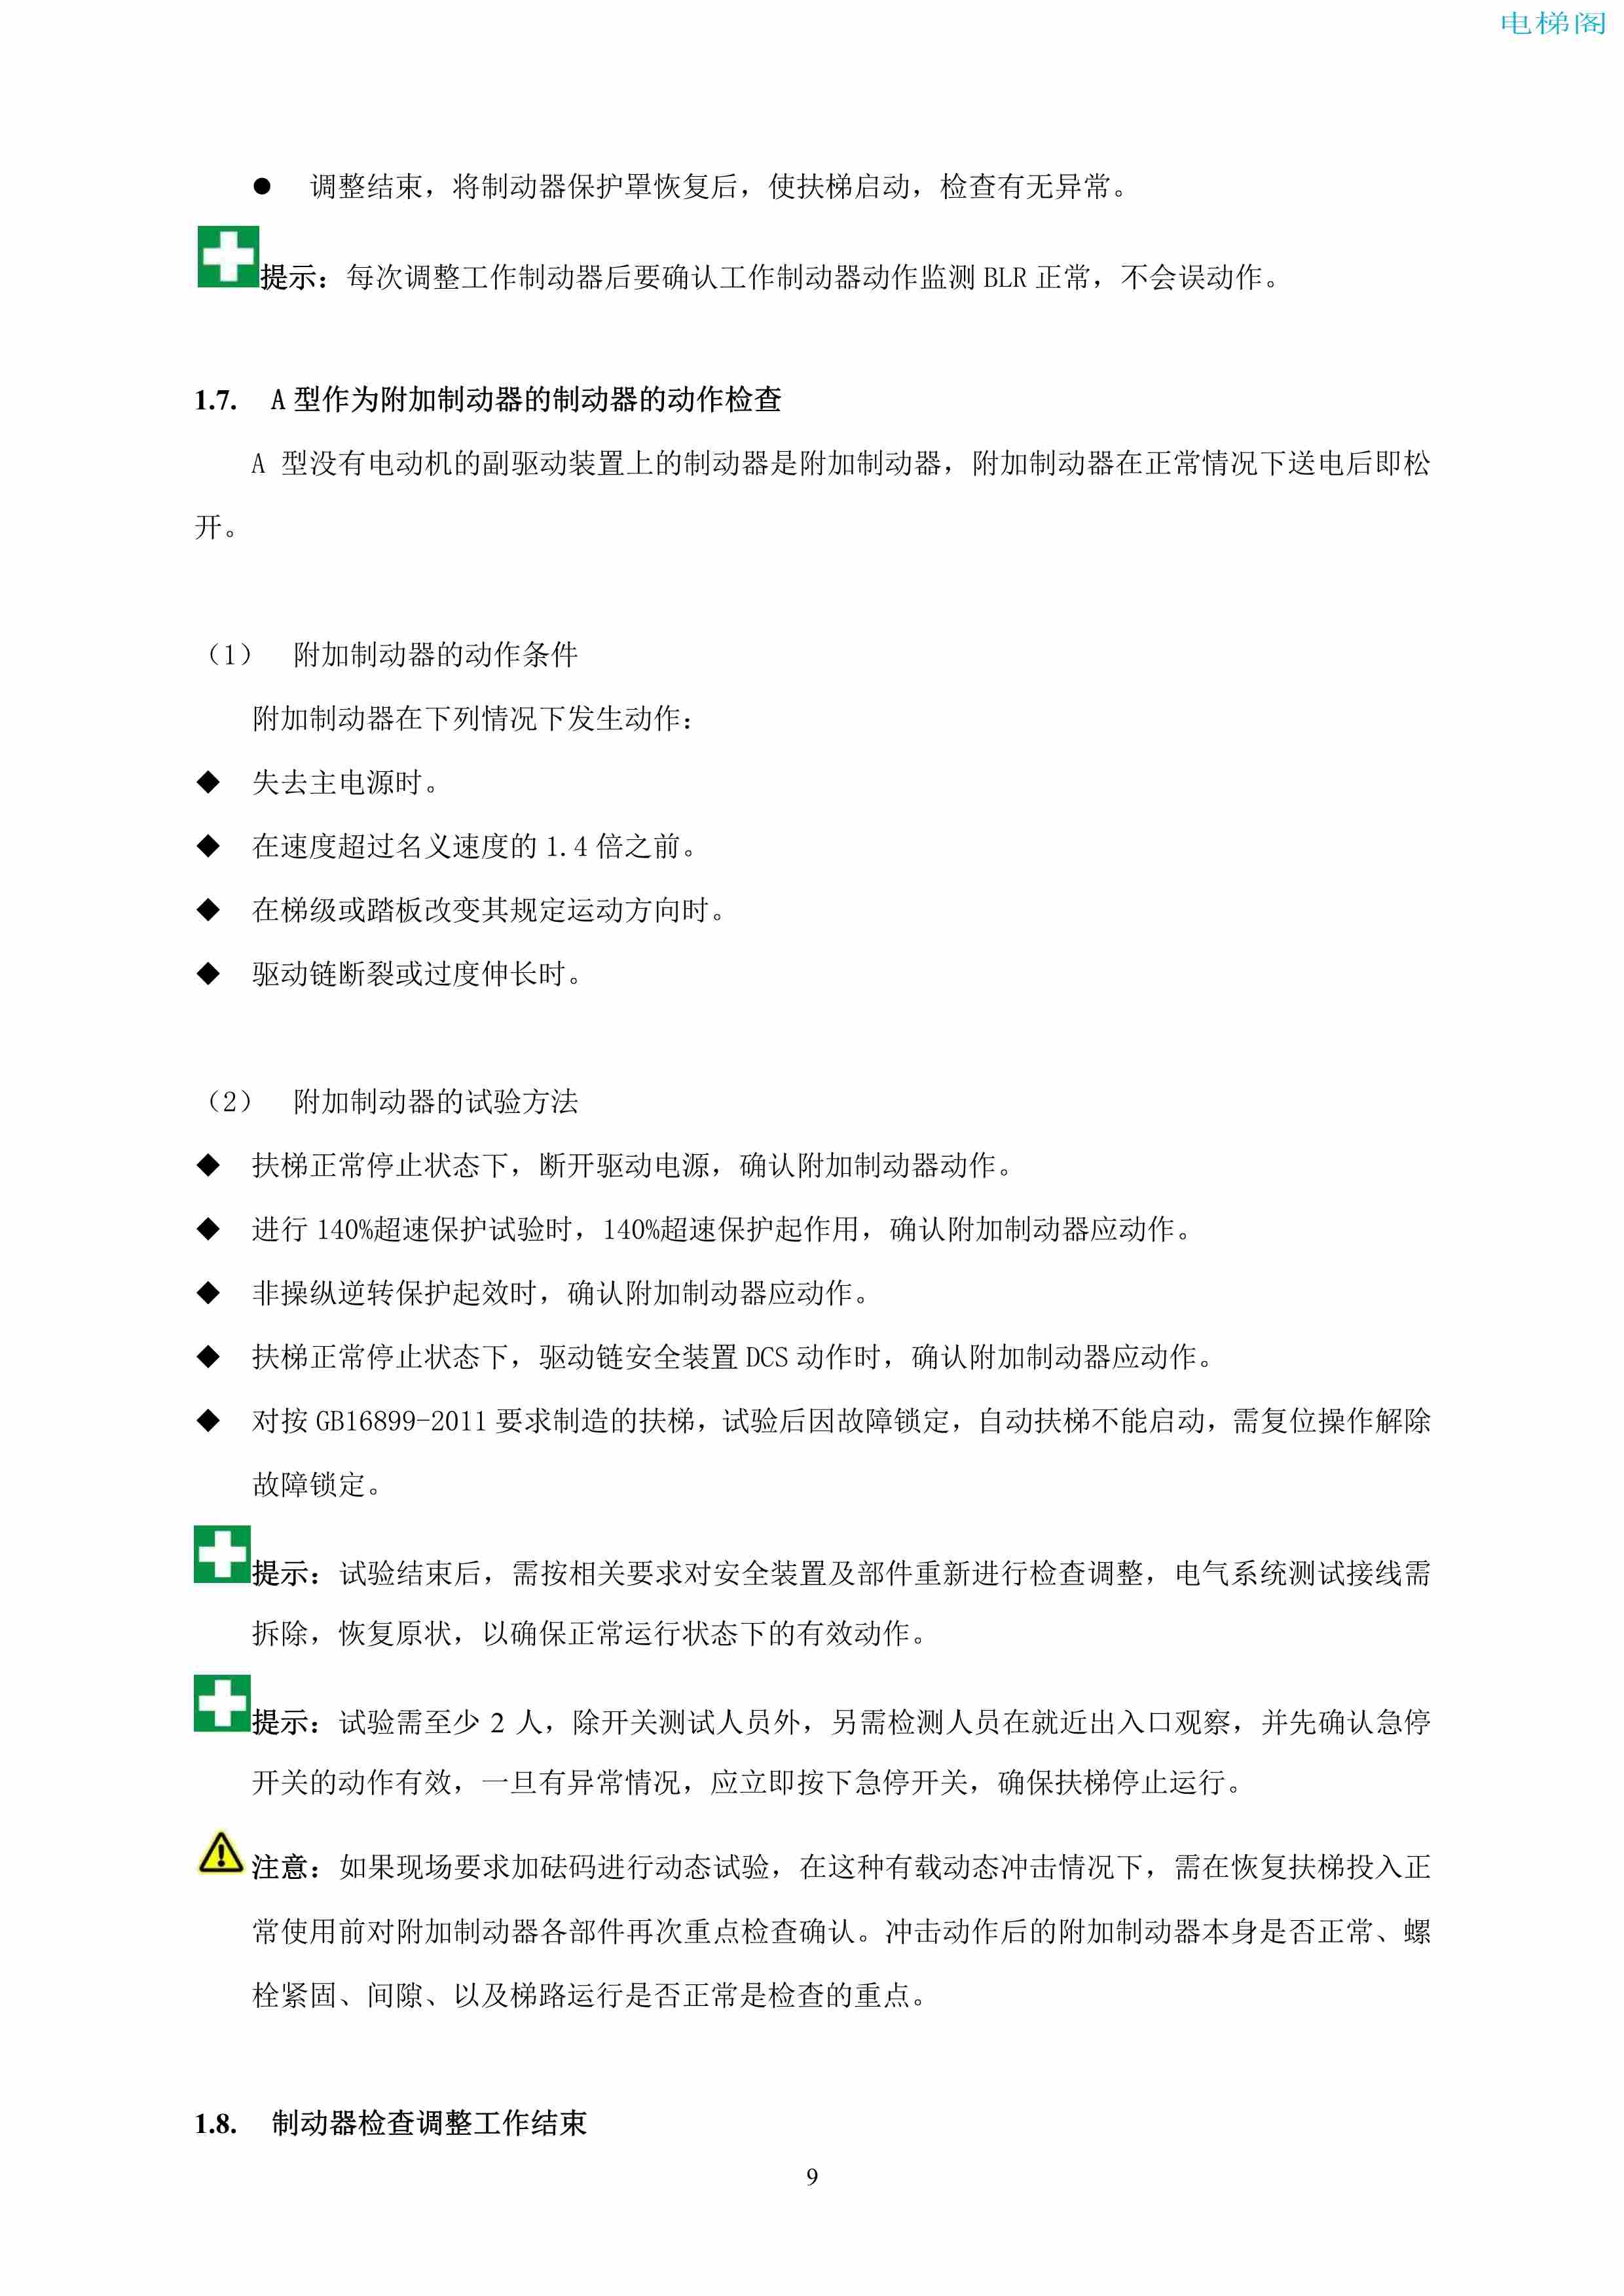 上海三菱电梯有限公司自动扶梯制动器维护作业要领汇编_10.jpg